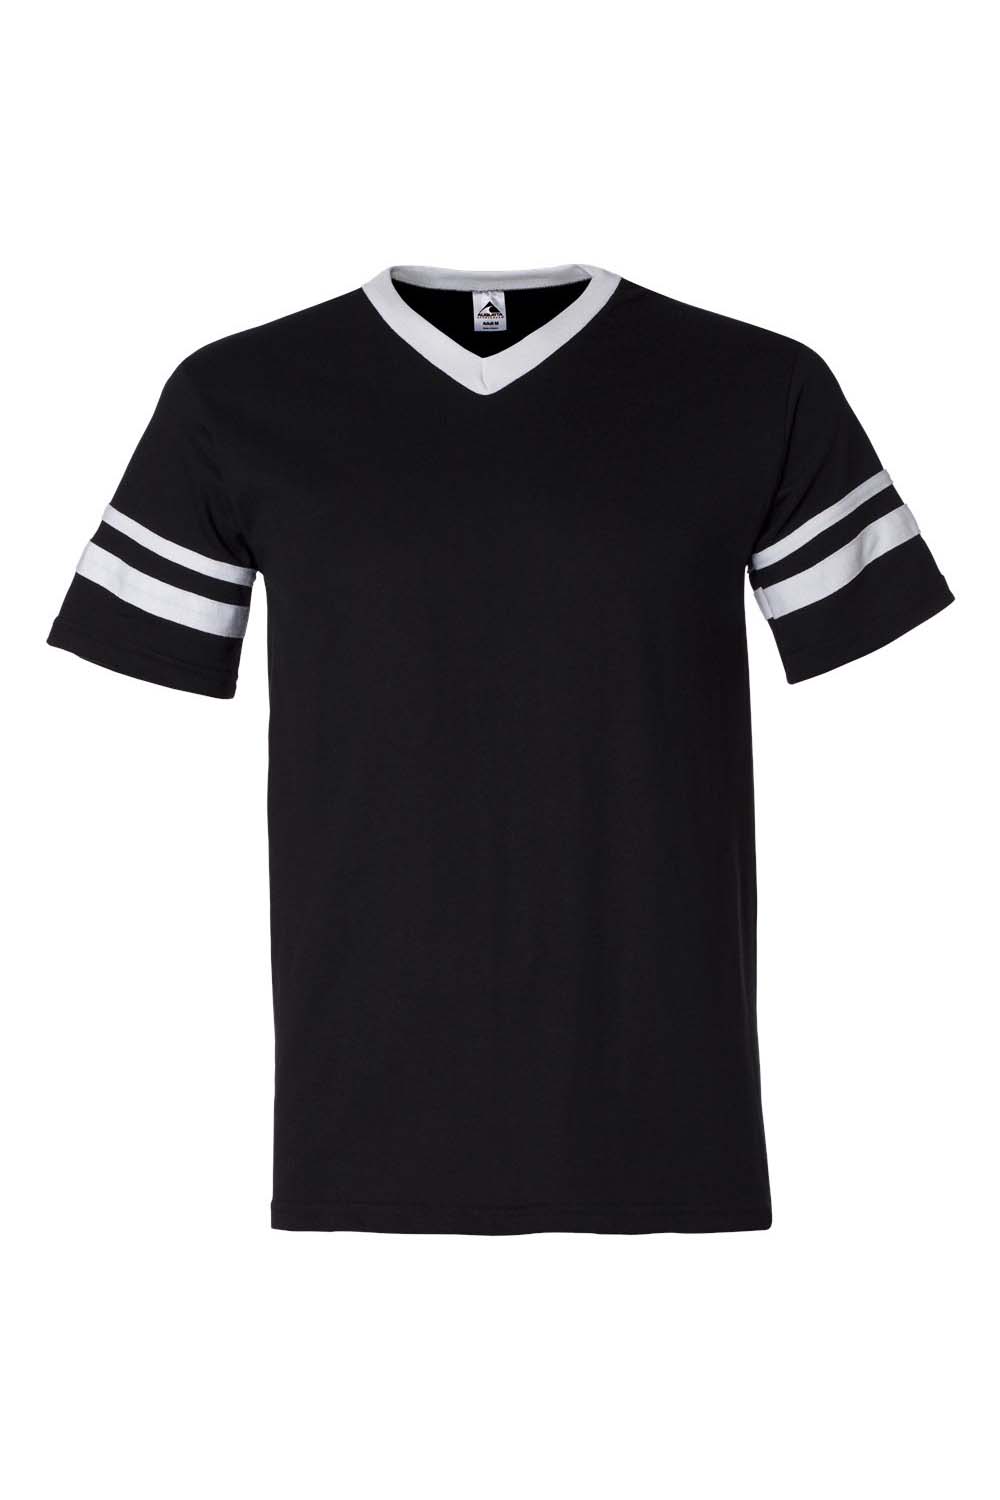 Augusta Sportswear 360 Mens Short Sleeve V-Neck T-Shirt Black/White Model Flat Front